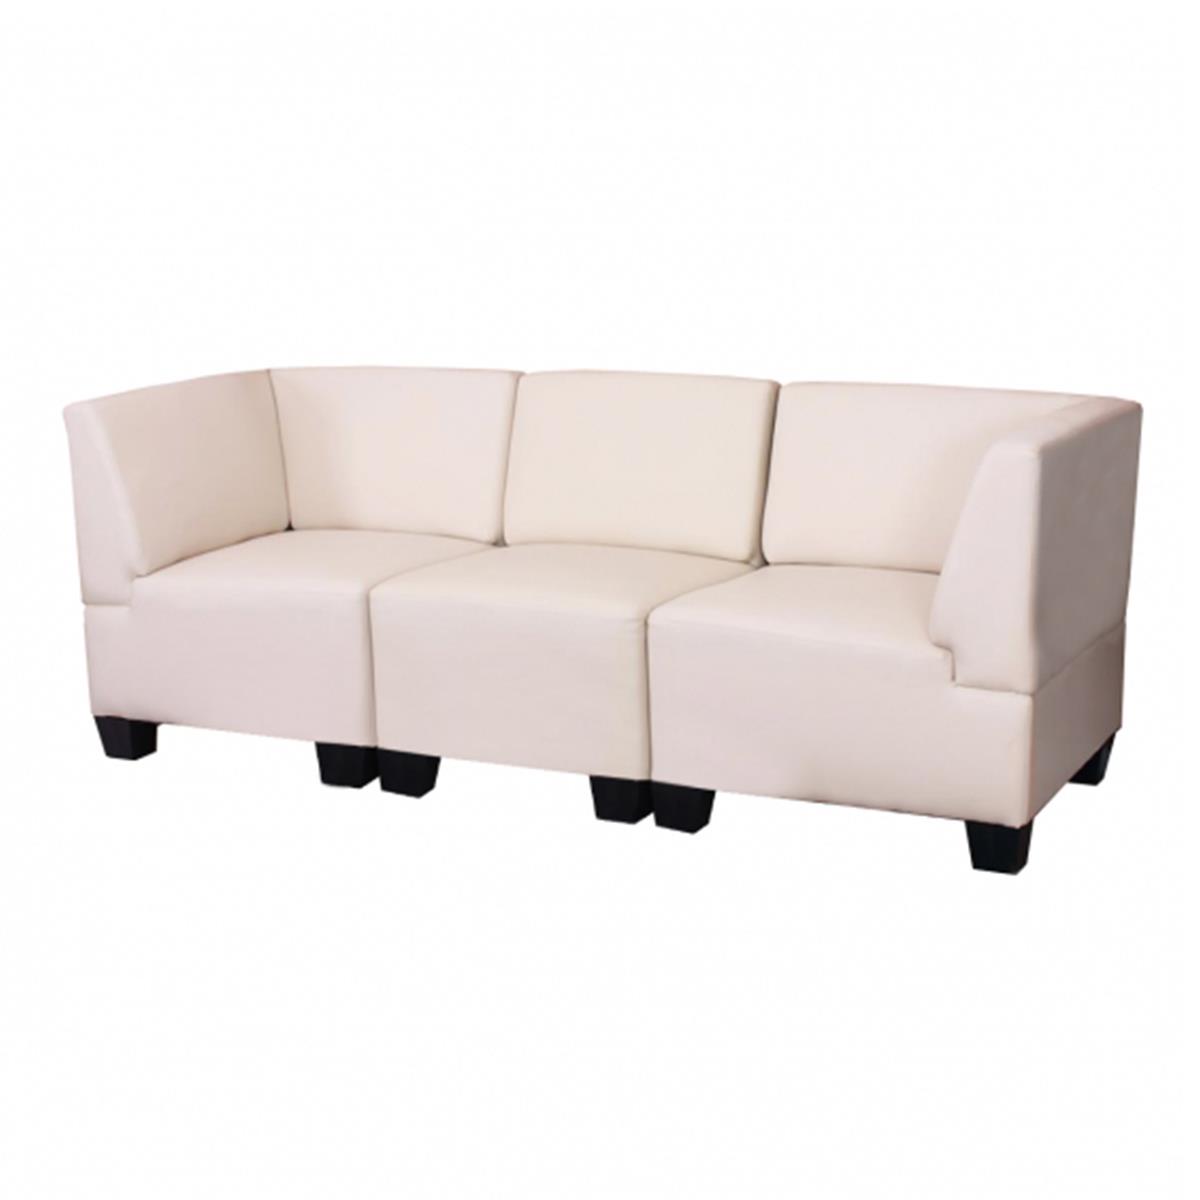 Reposabrazos derecho para sofá cama modular de 2 plazas beige